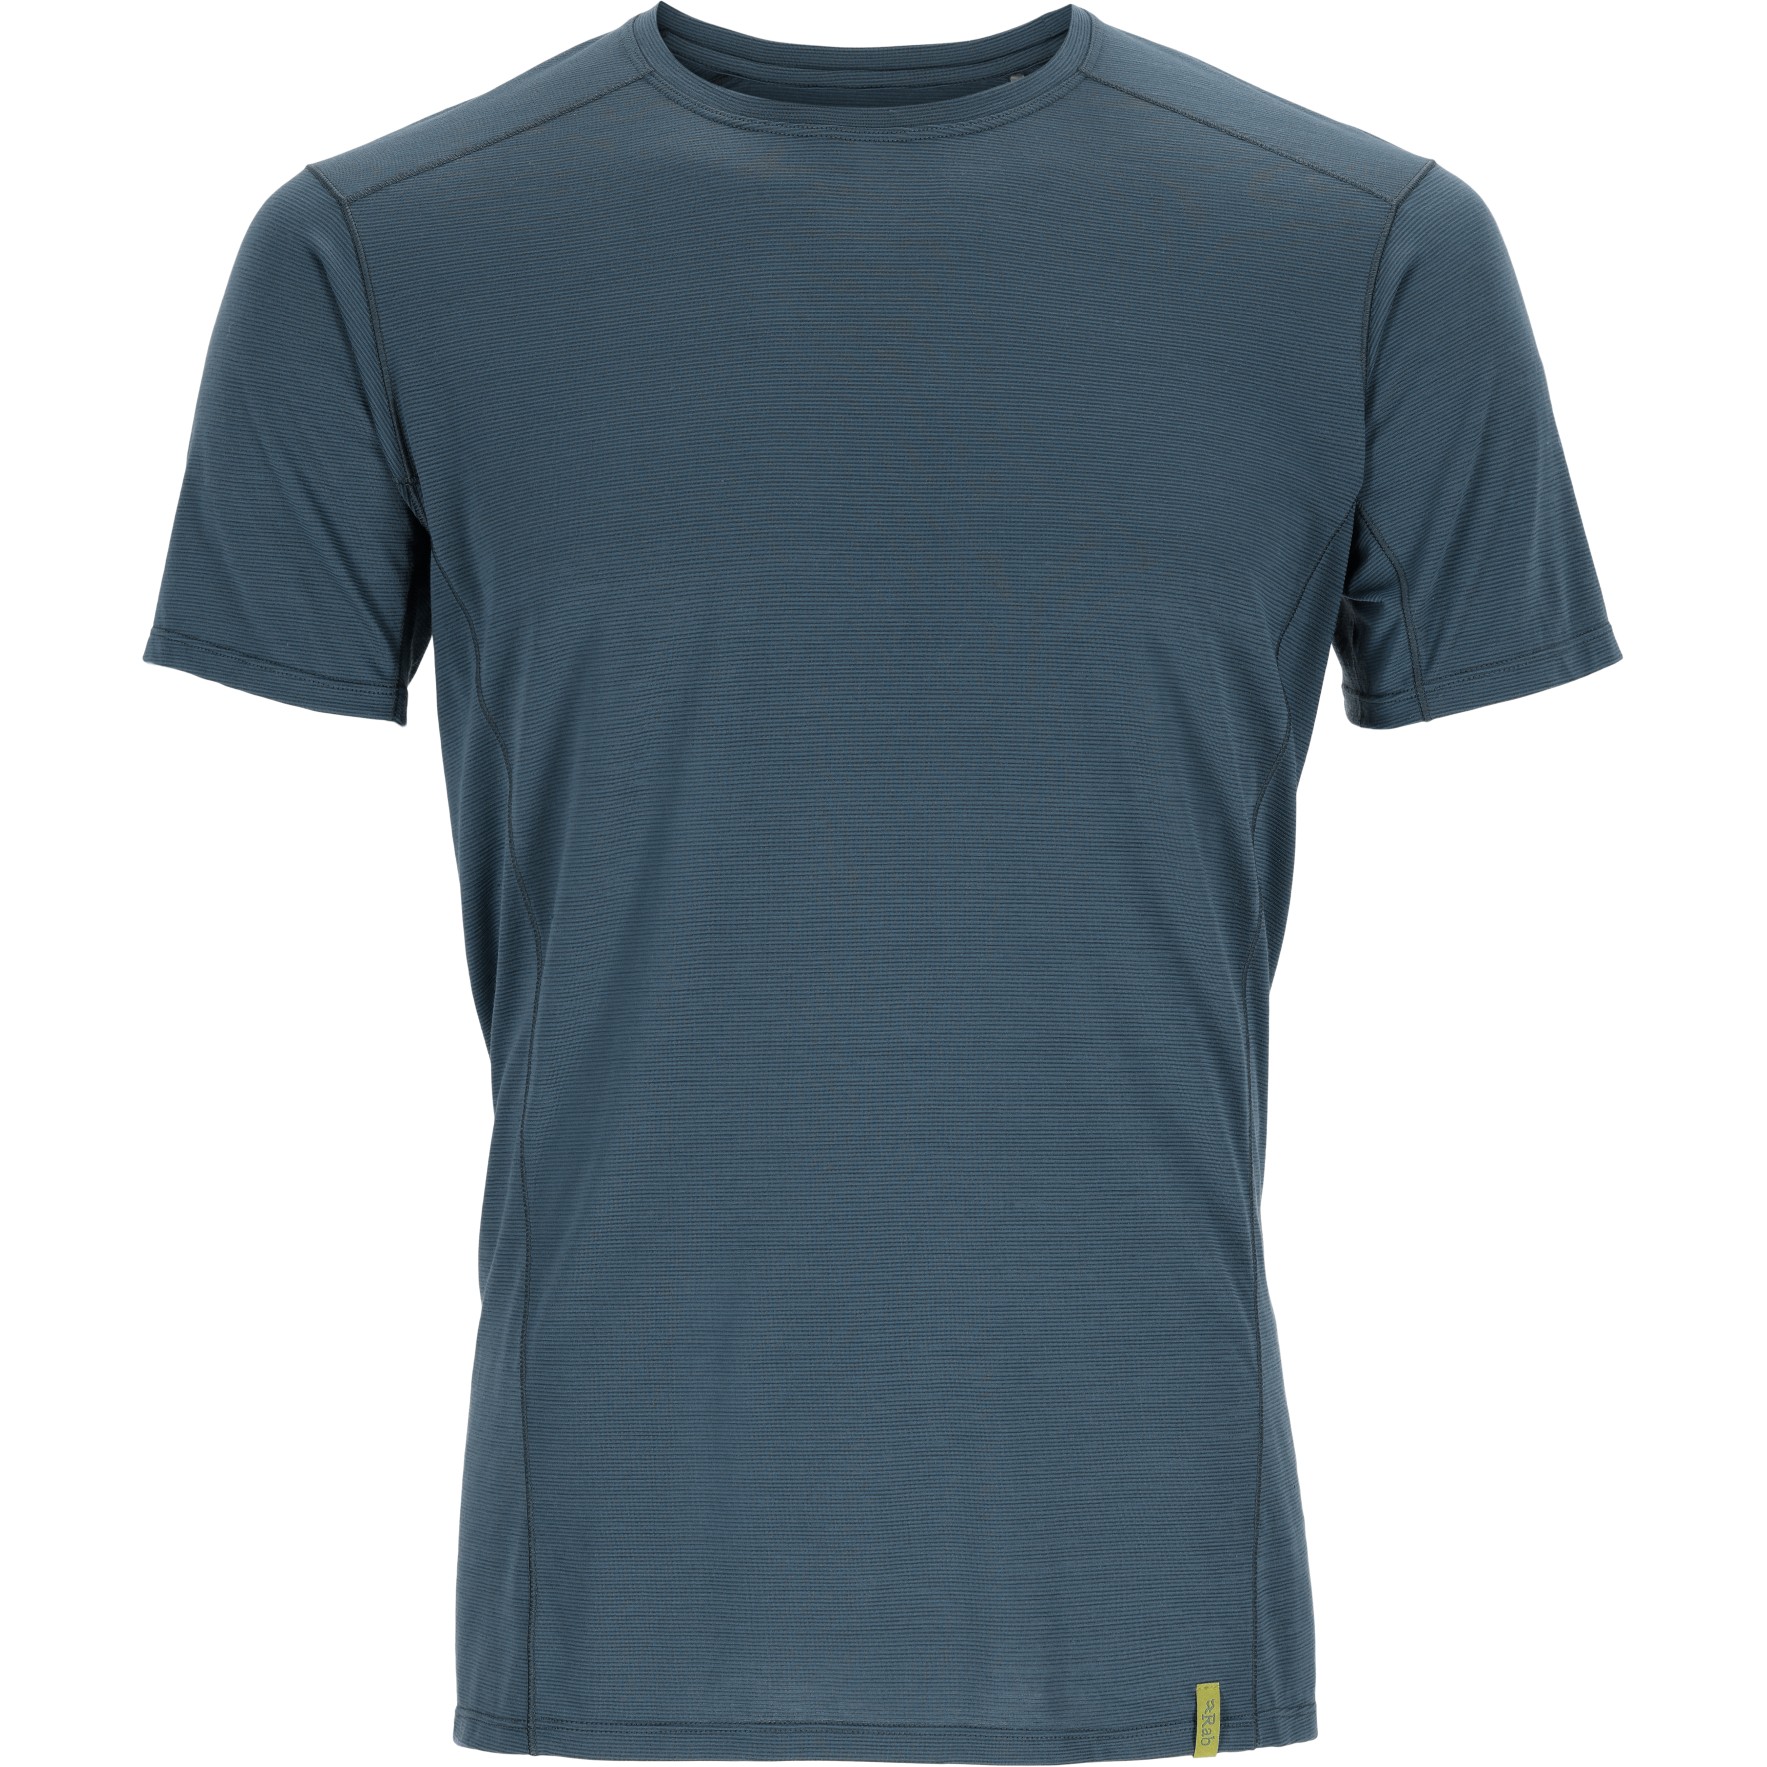 Produktbild von Rab Syncrino Base T-Shirt Herren - orion blue